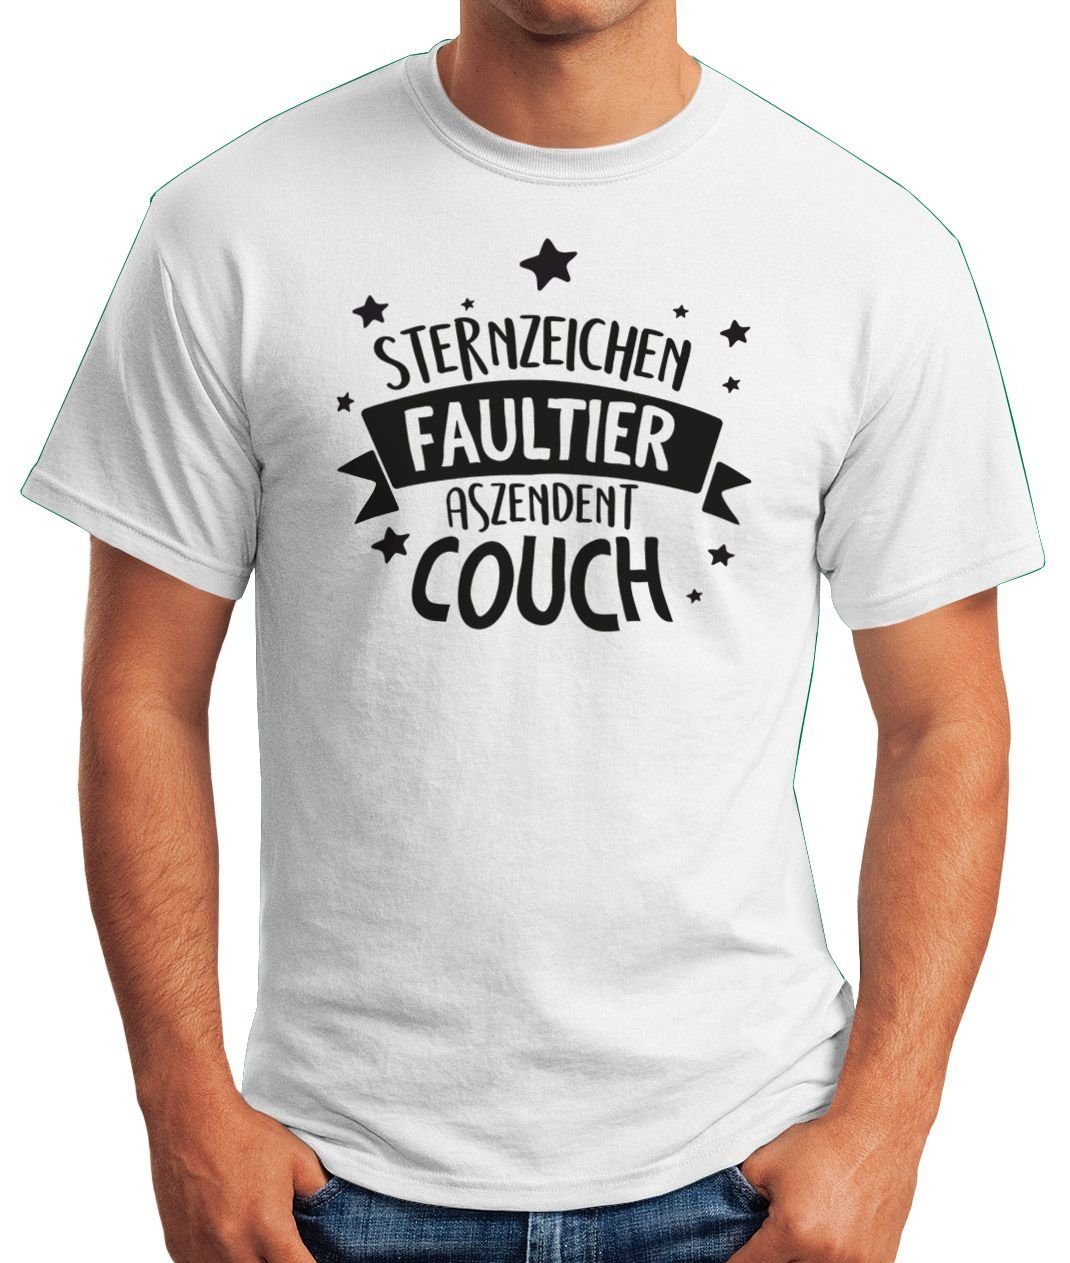 T-Shirt Herren Print lustig Print-Shirt Couch. Fun-Shirt Spruch mit Moonworks® Aszendent Sternzeichen mit Motiv MoonWorks Faultier.